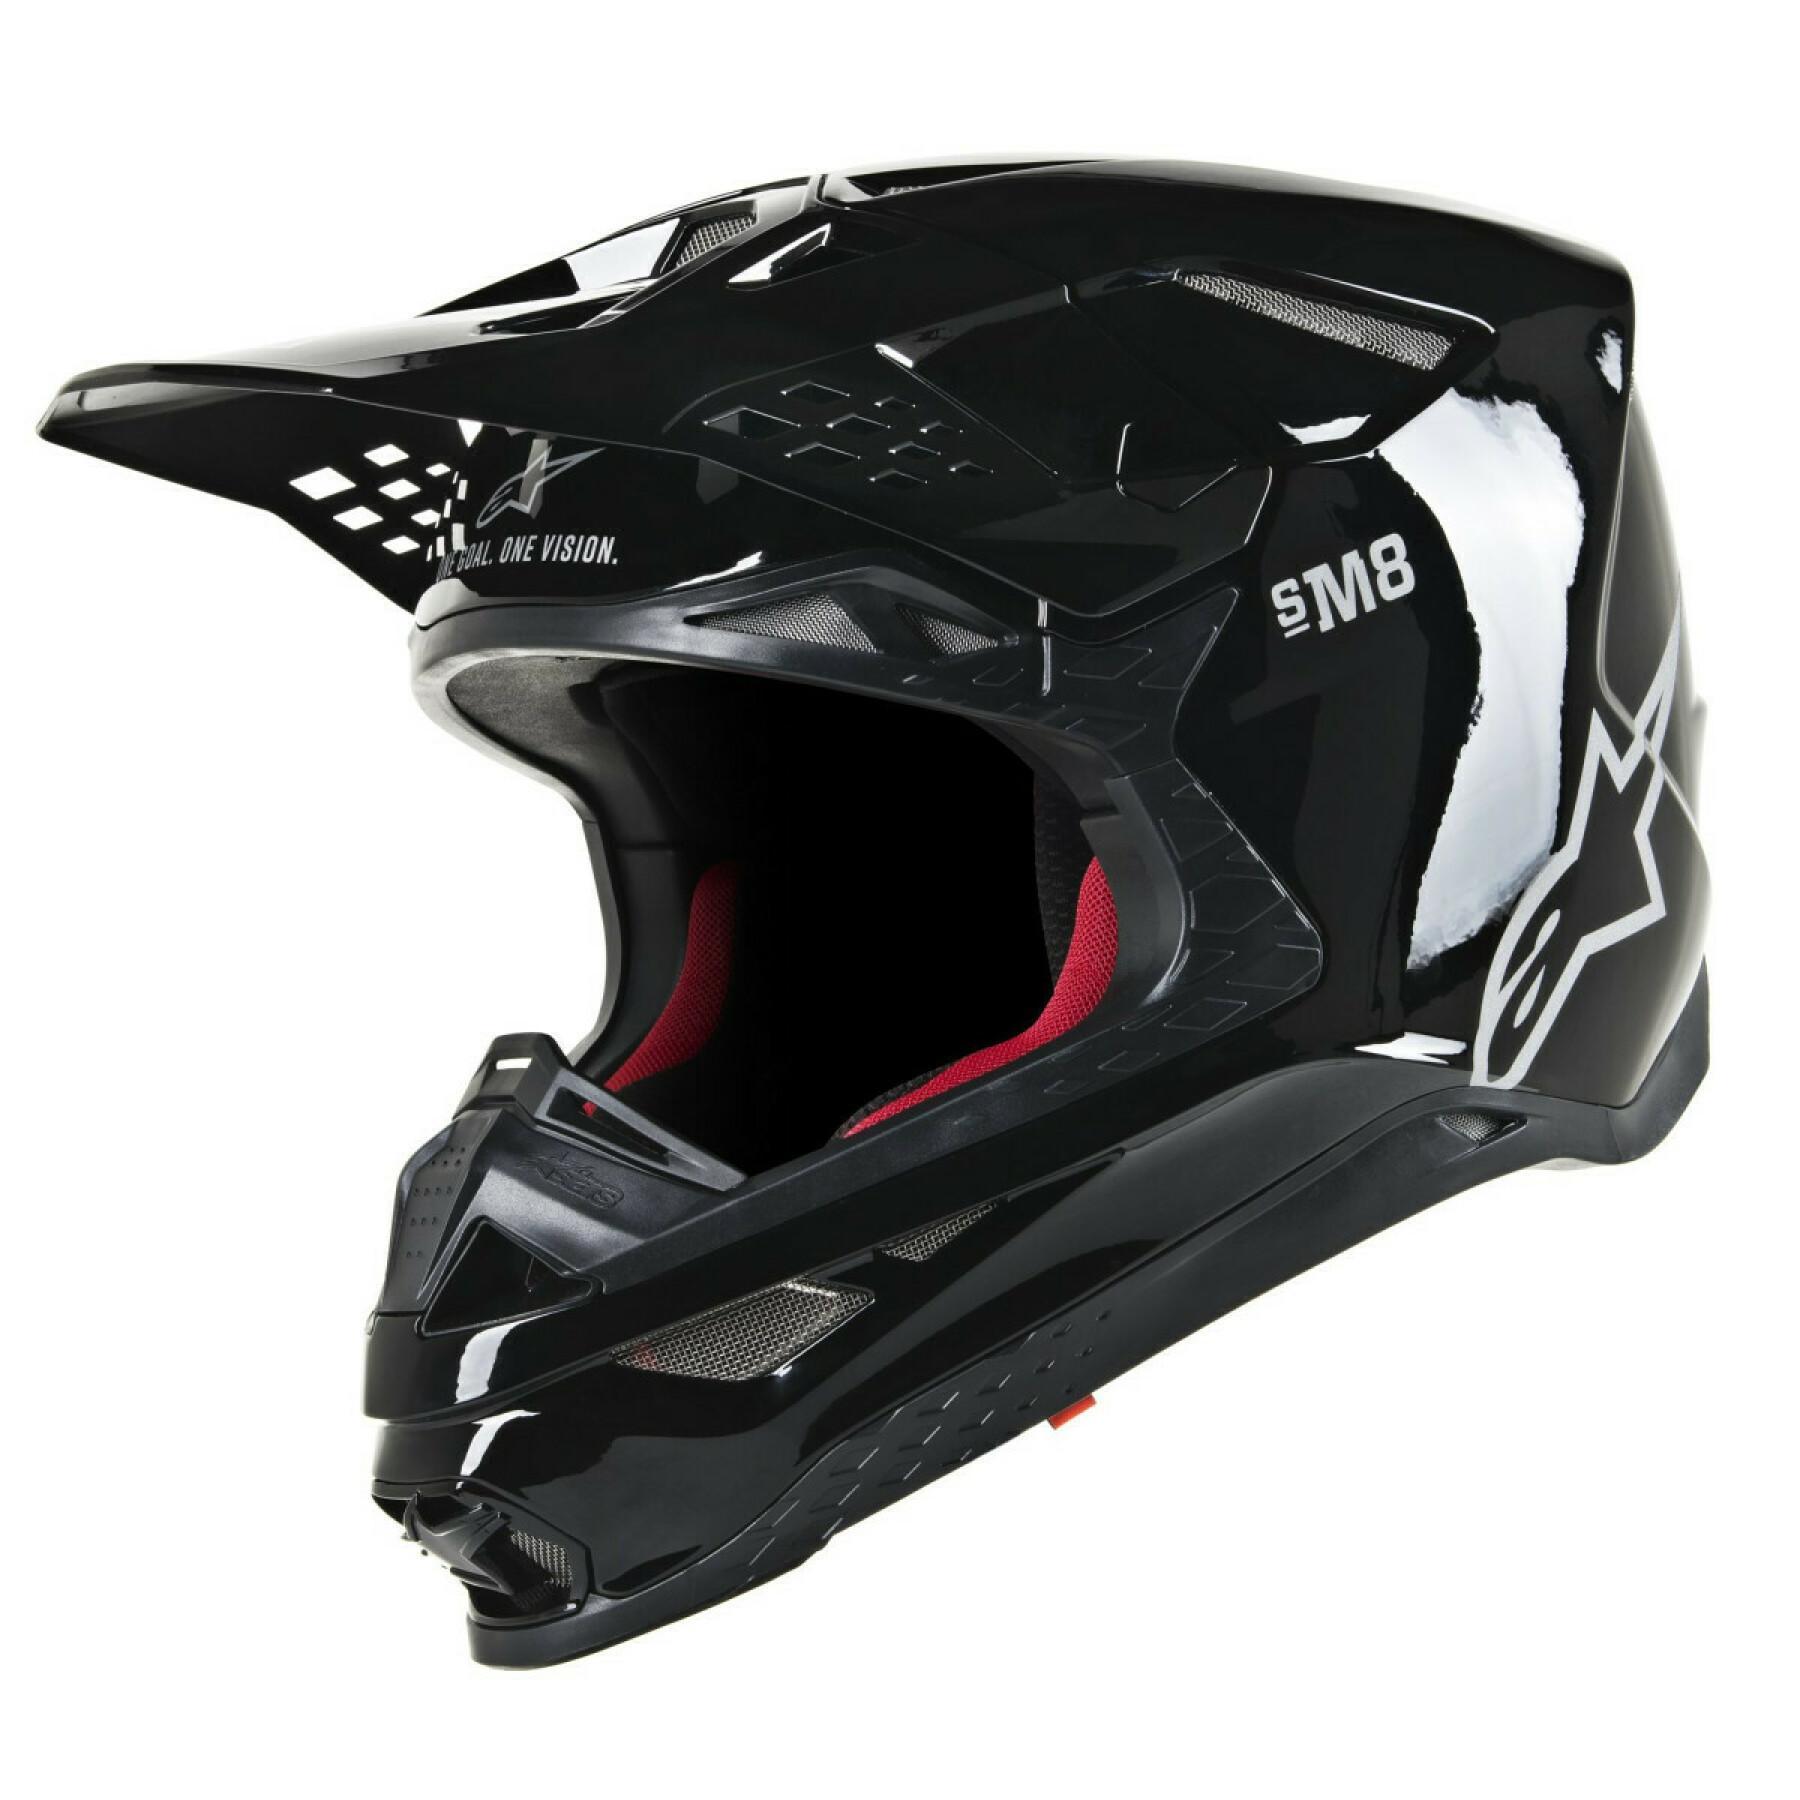 Motocrosshjälm Alpinestars SM8 solid black